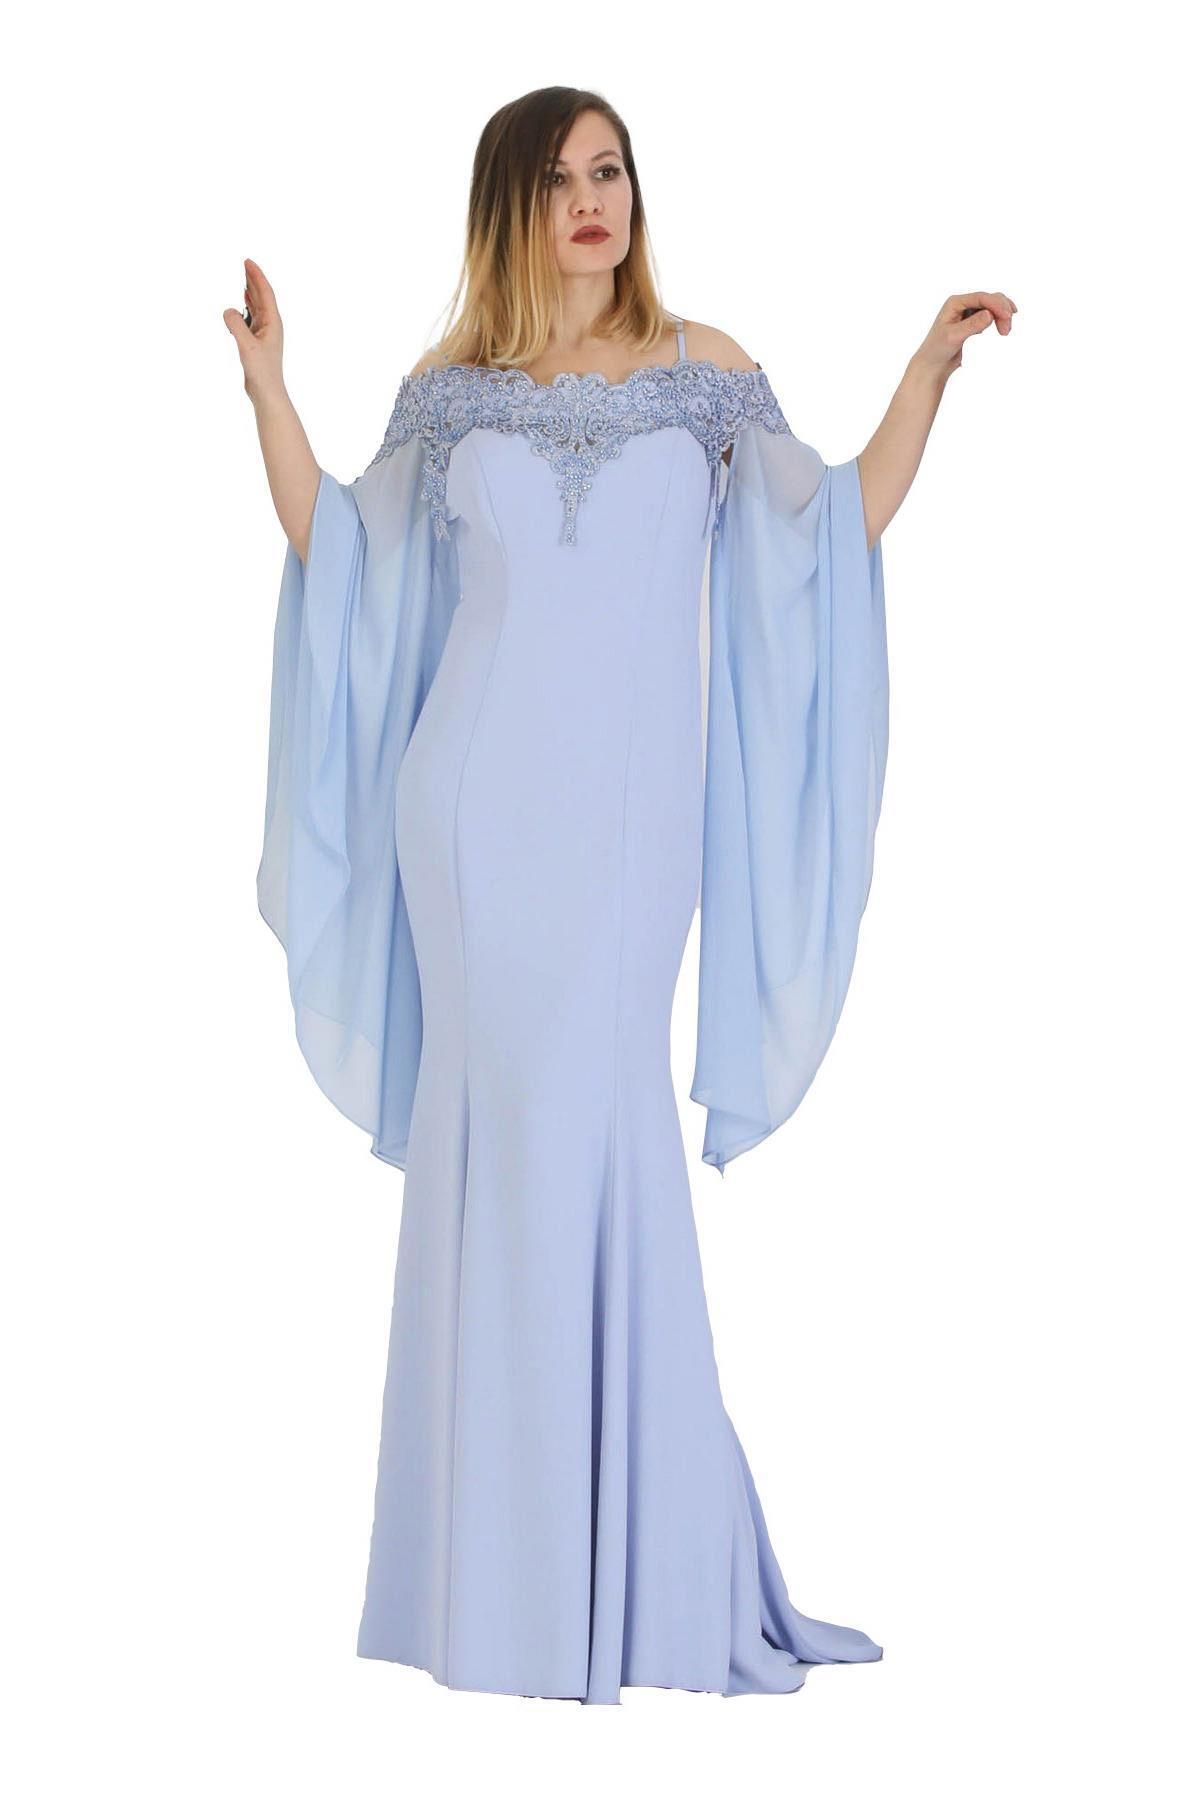 FİERTE Fierte Kadın Abiye Elbise Crd4388 Ince Ip Askı Çıkabilen Şifon Yaka Güpür Dantel Işleme Balık Krep D